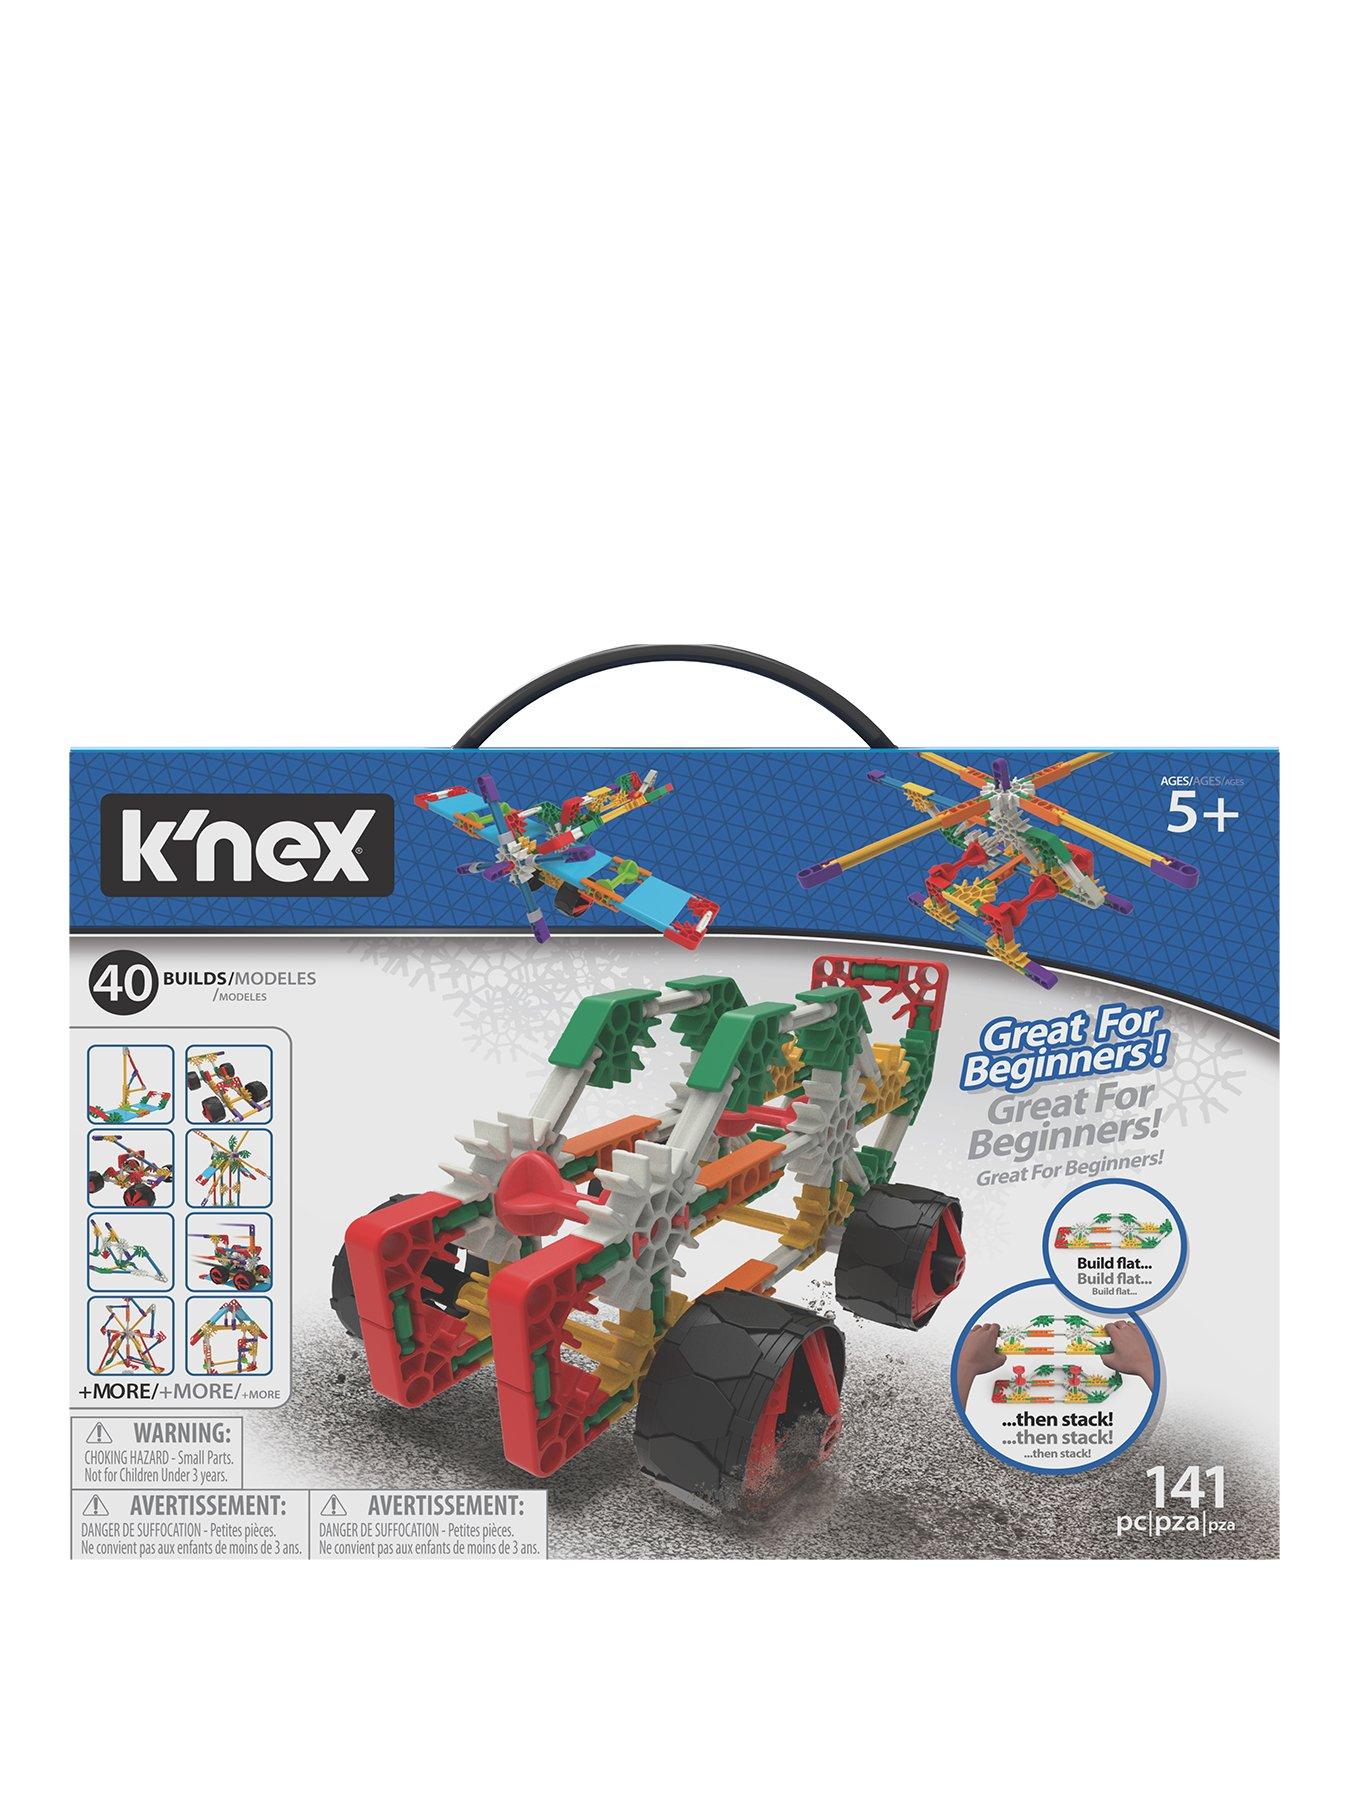 knex toy company